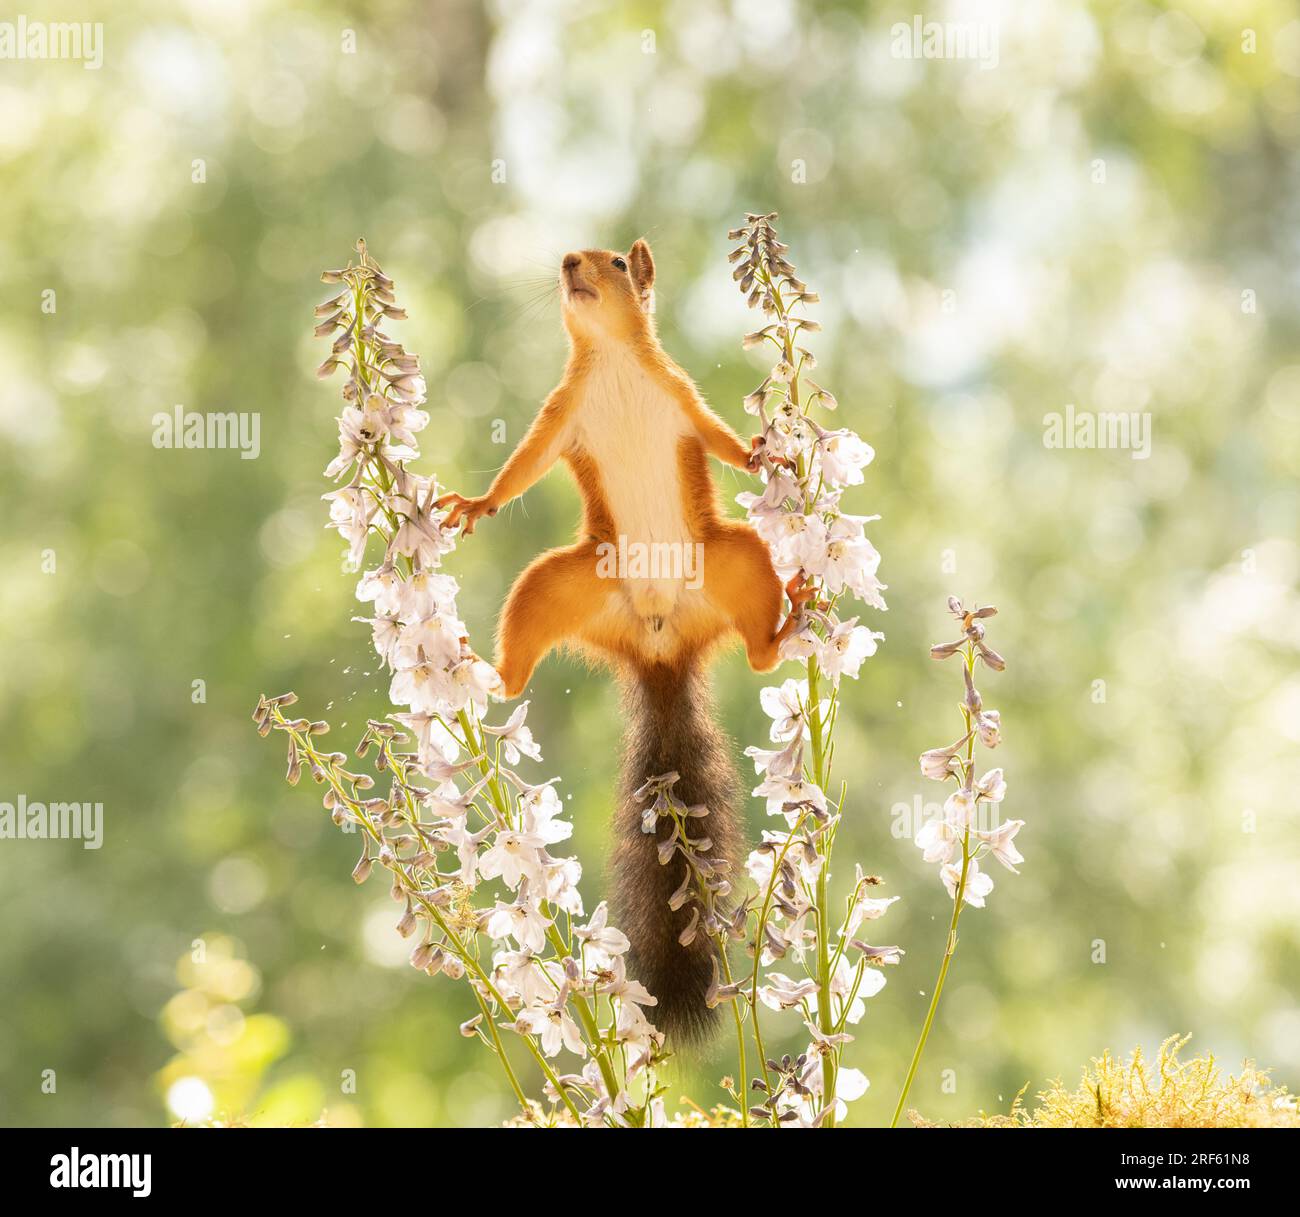 Red squirrel is standing between Delphinium flowers Stock Photo